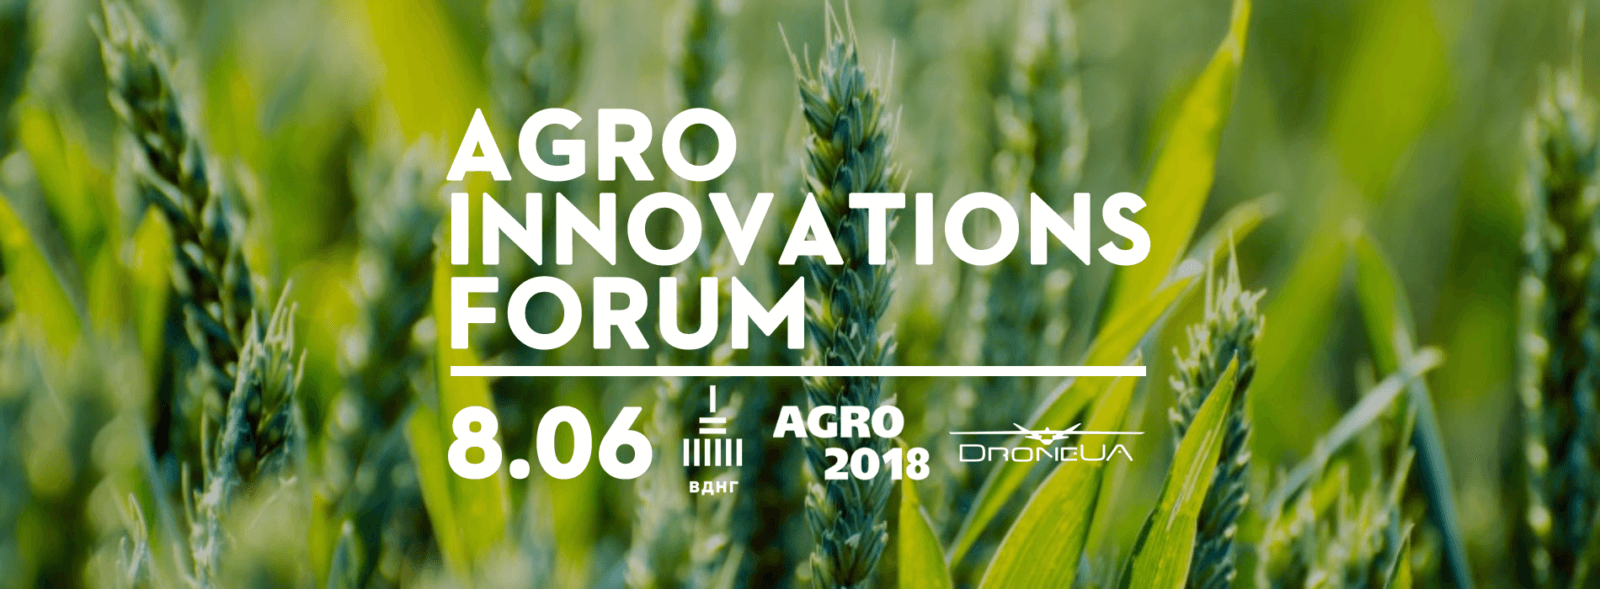 Програма Agro Innovations Forum 2018